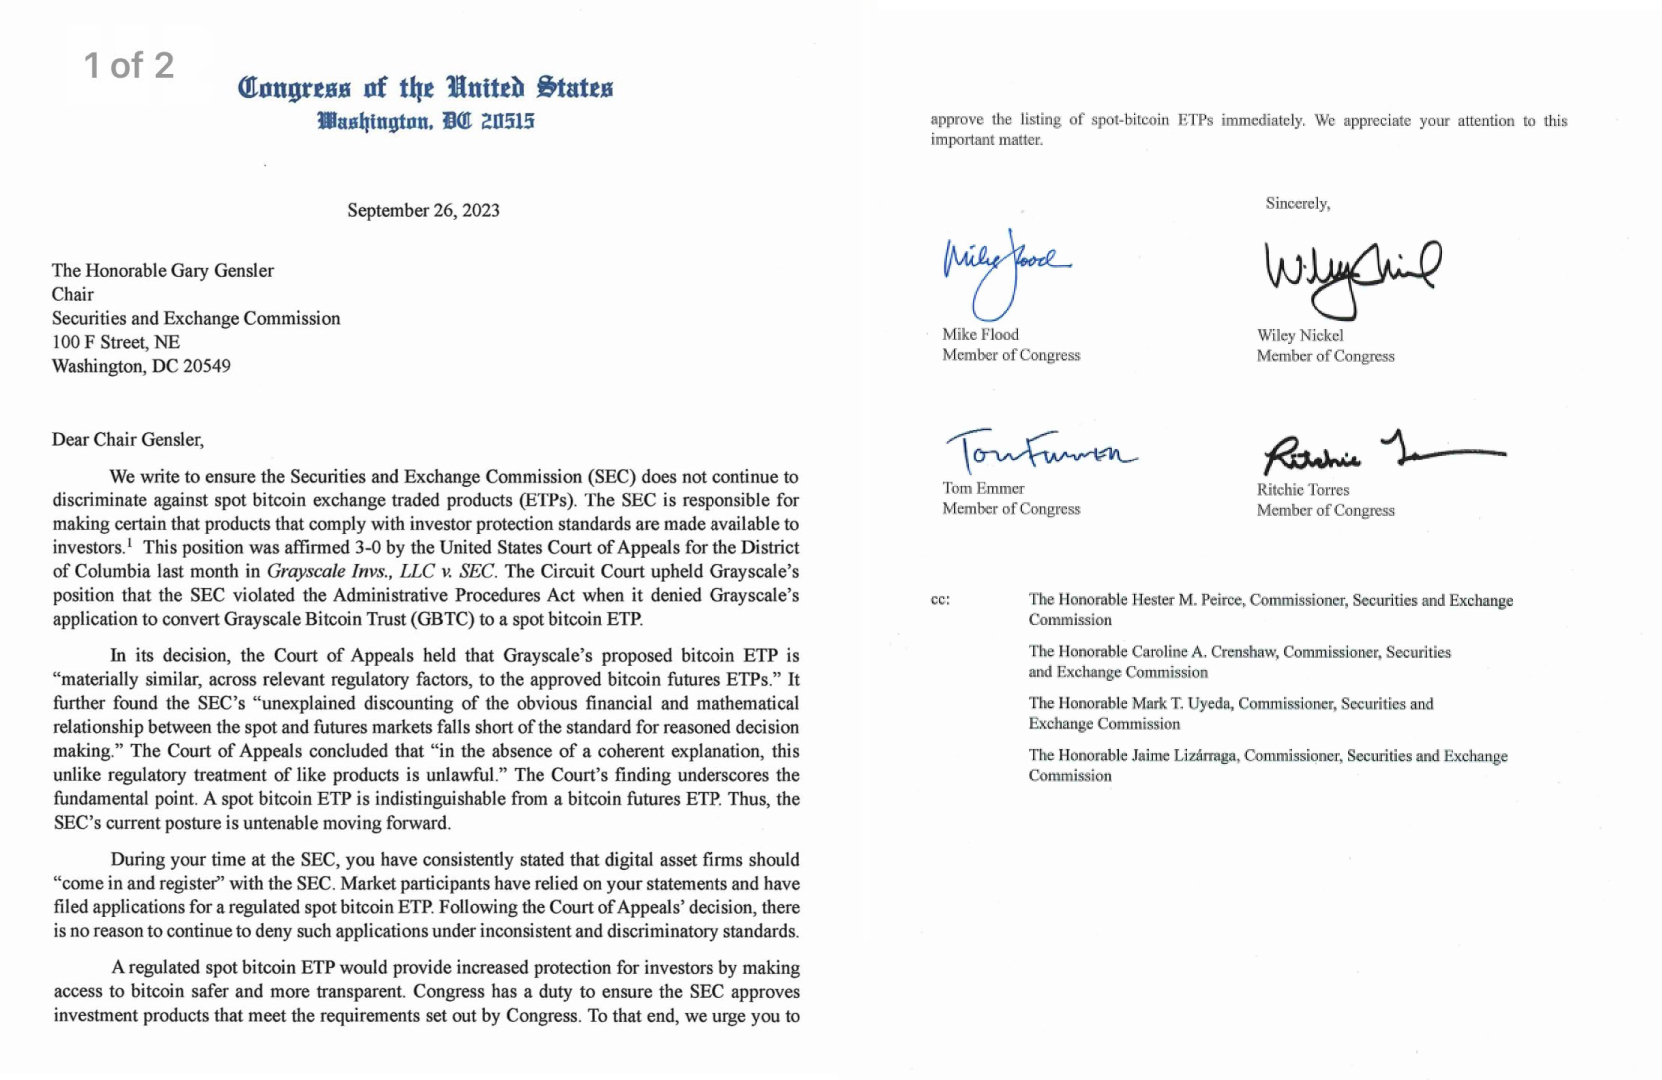 Lettera inviata alla SEC da 4 rappresentanti degli Stati Uniti chiedendo l'approvazione del ETF di Bitcoin.